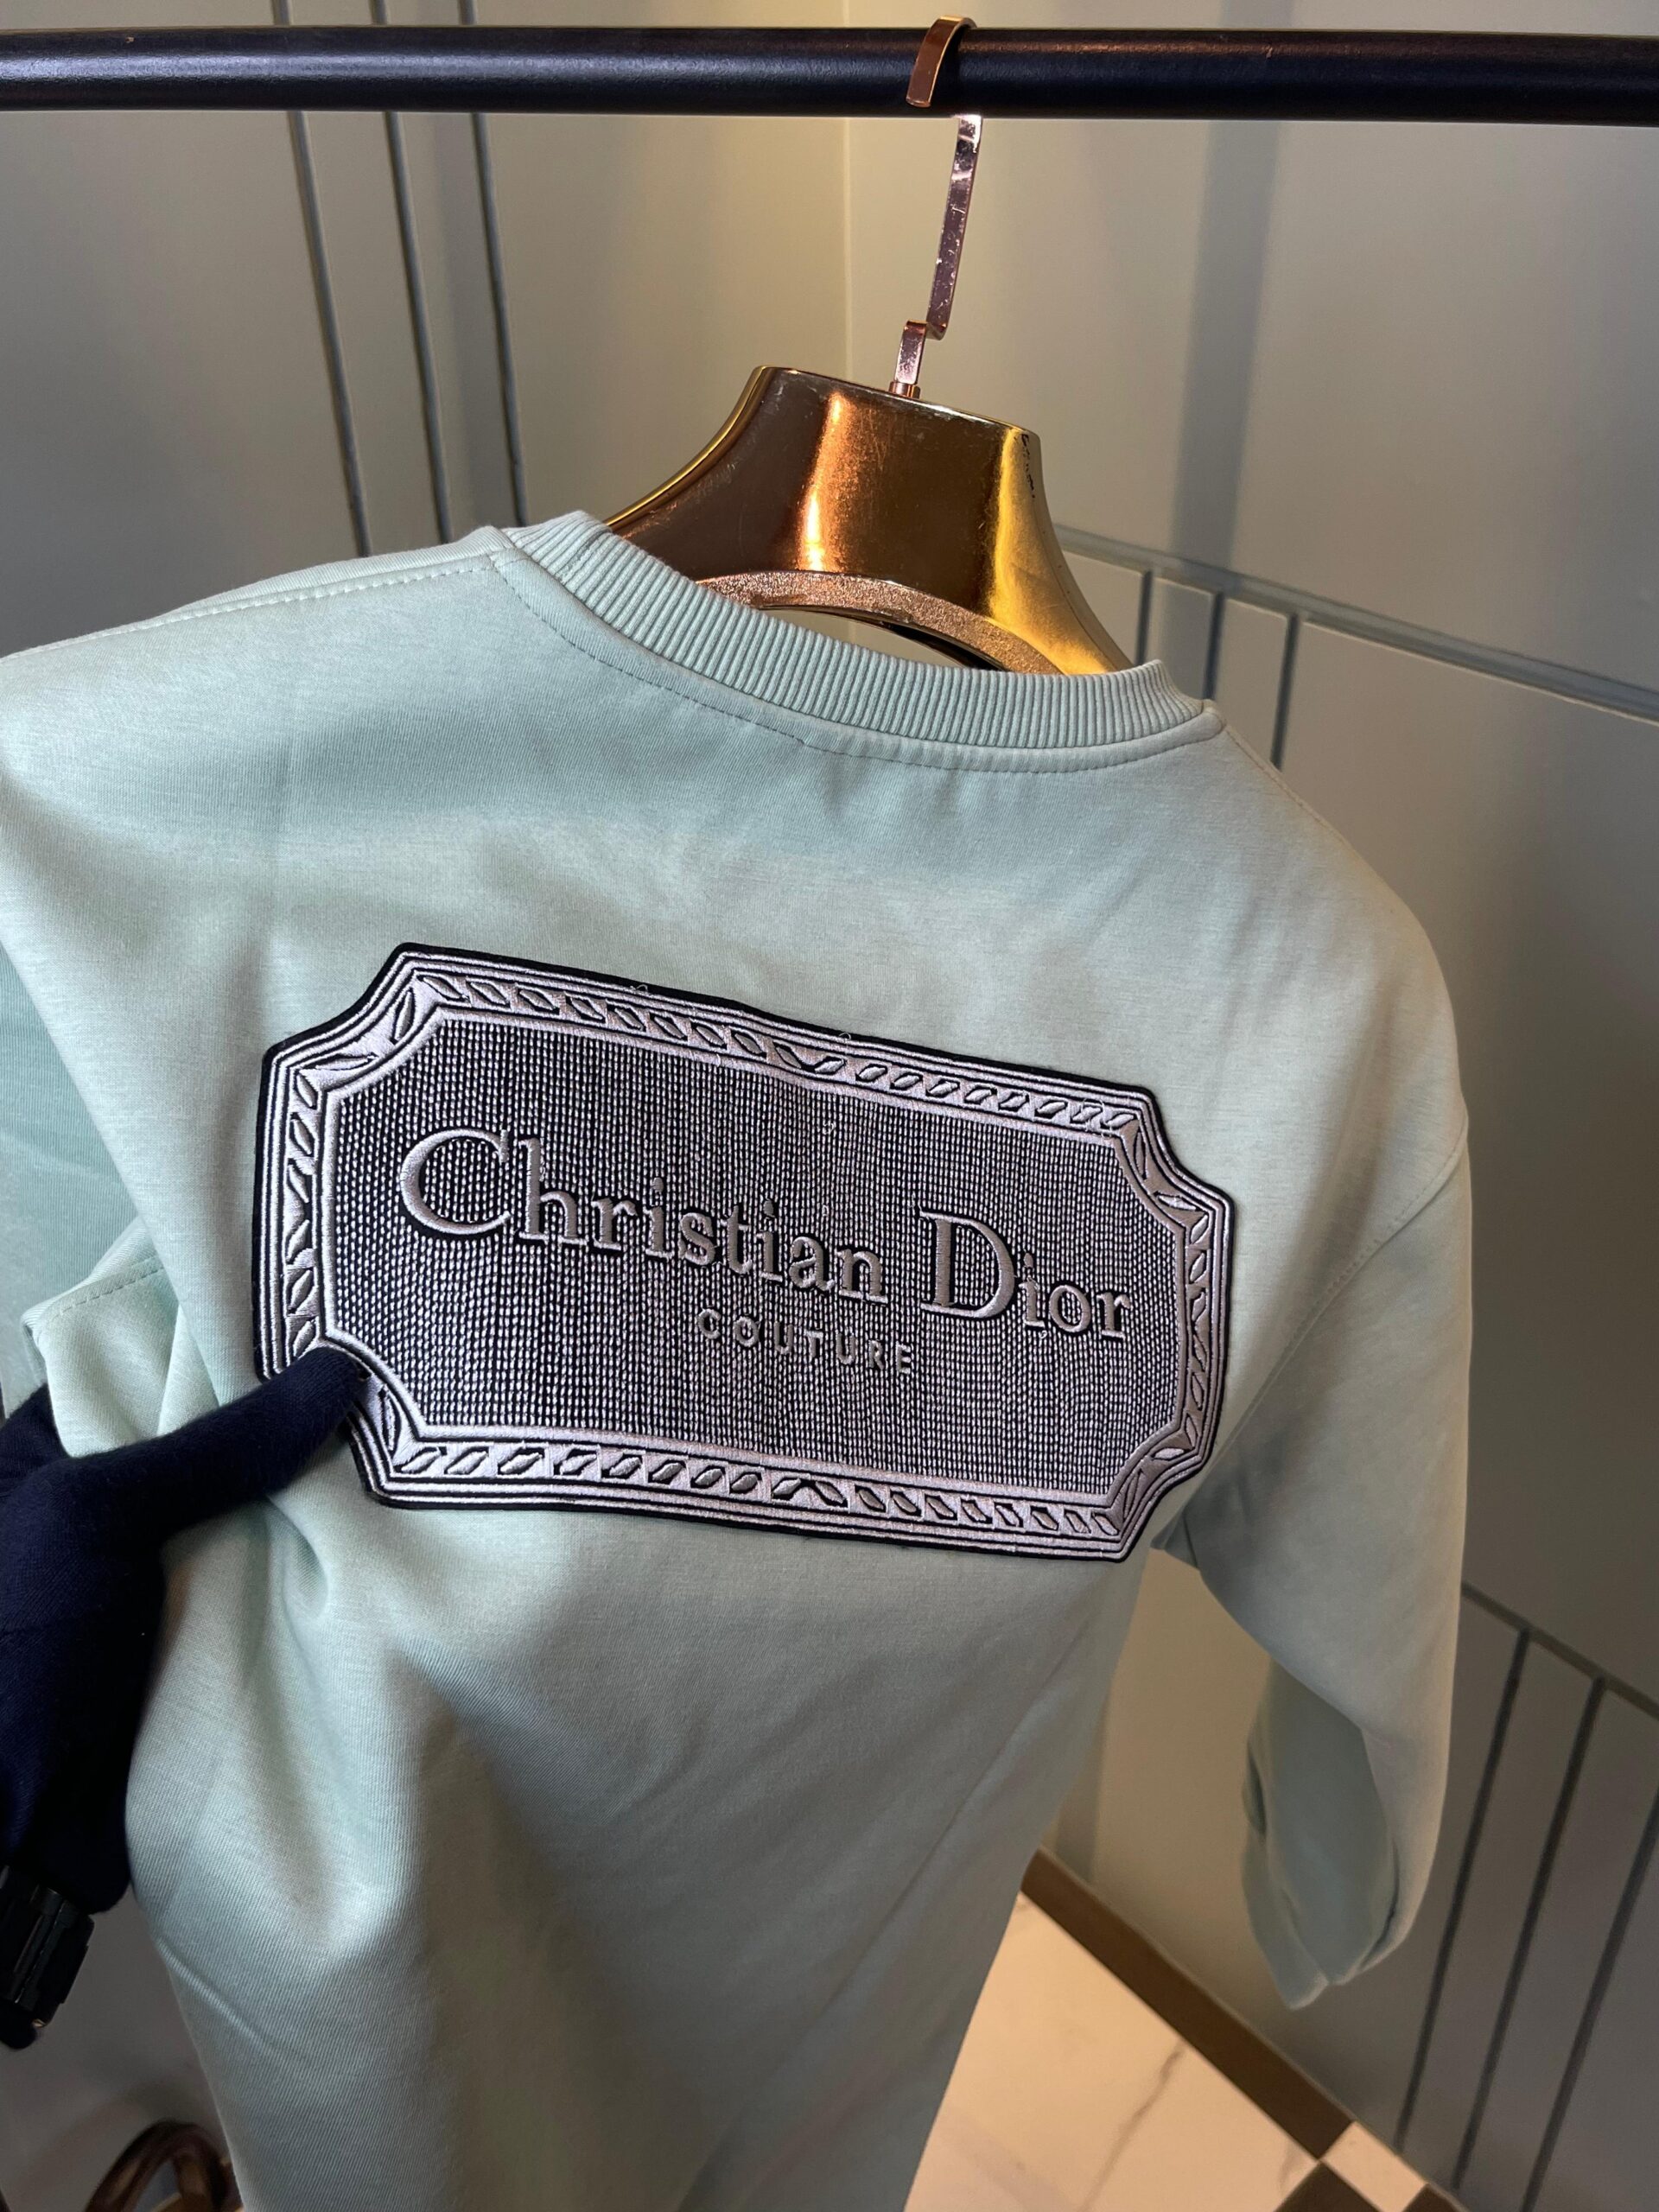 Dior Cotton Sweatshirts For Men - Best Deals Guru